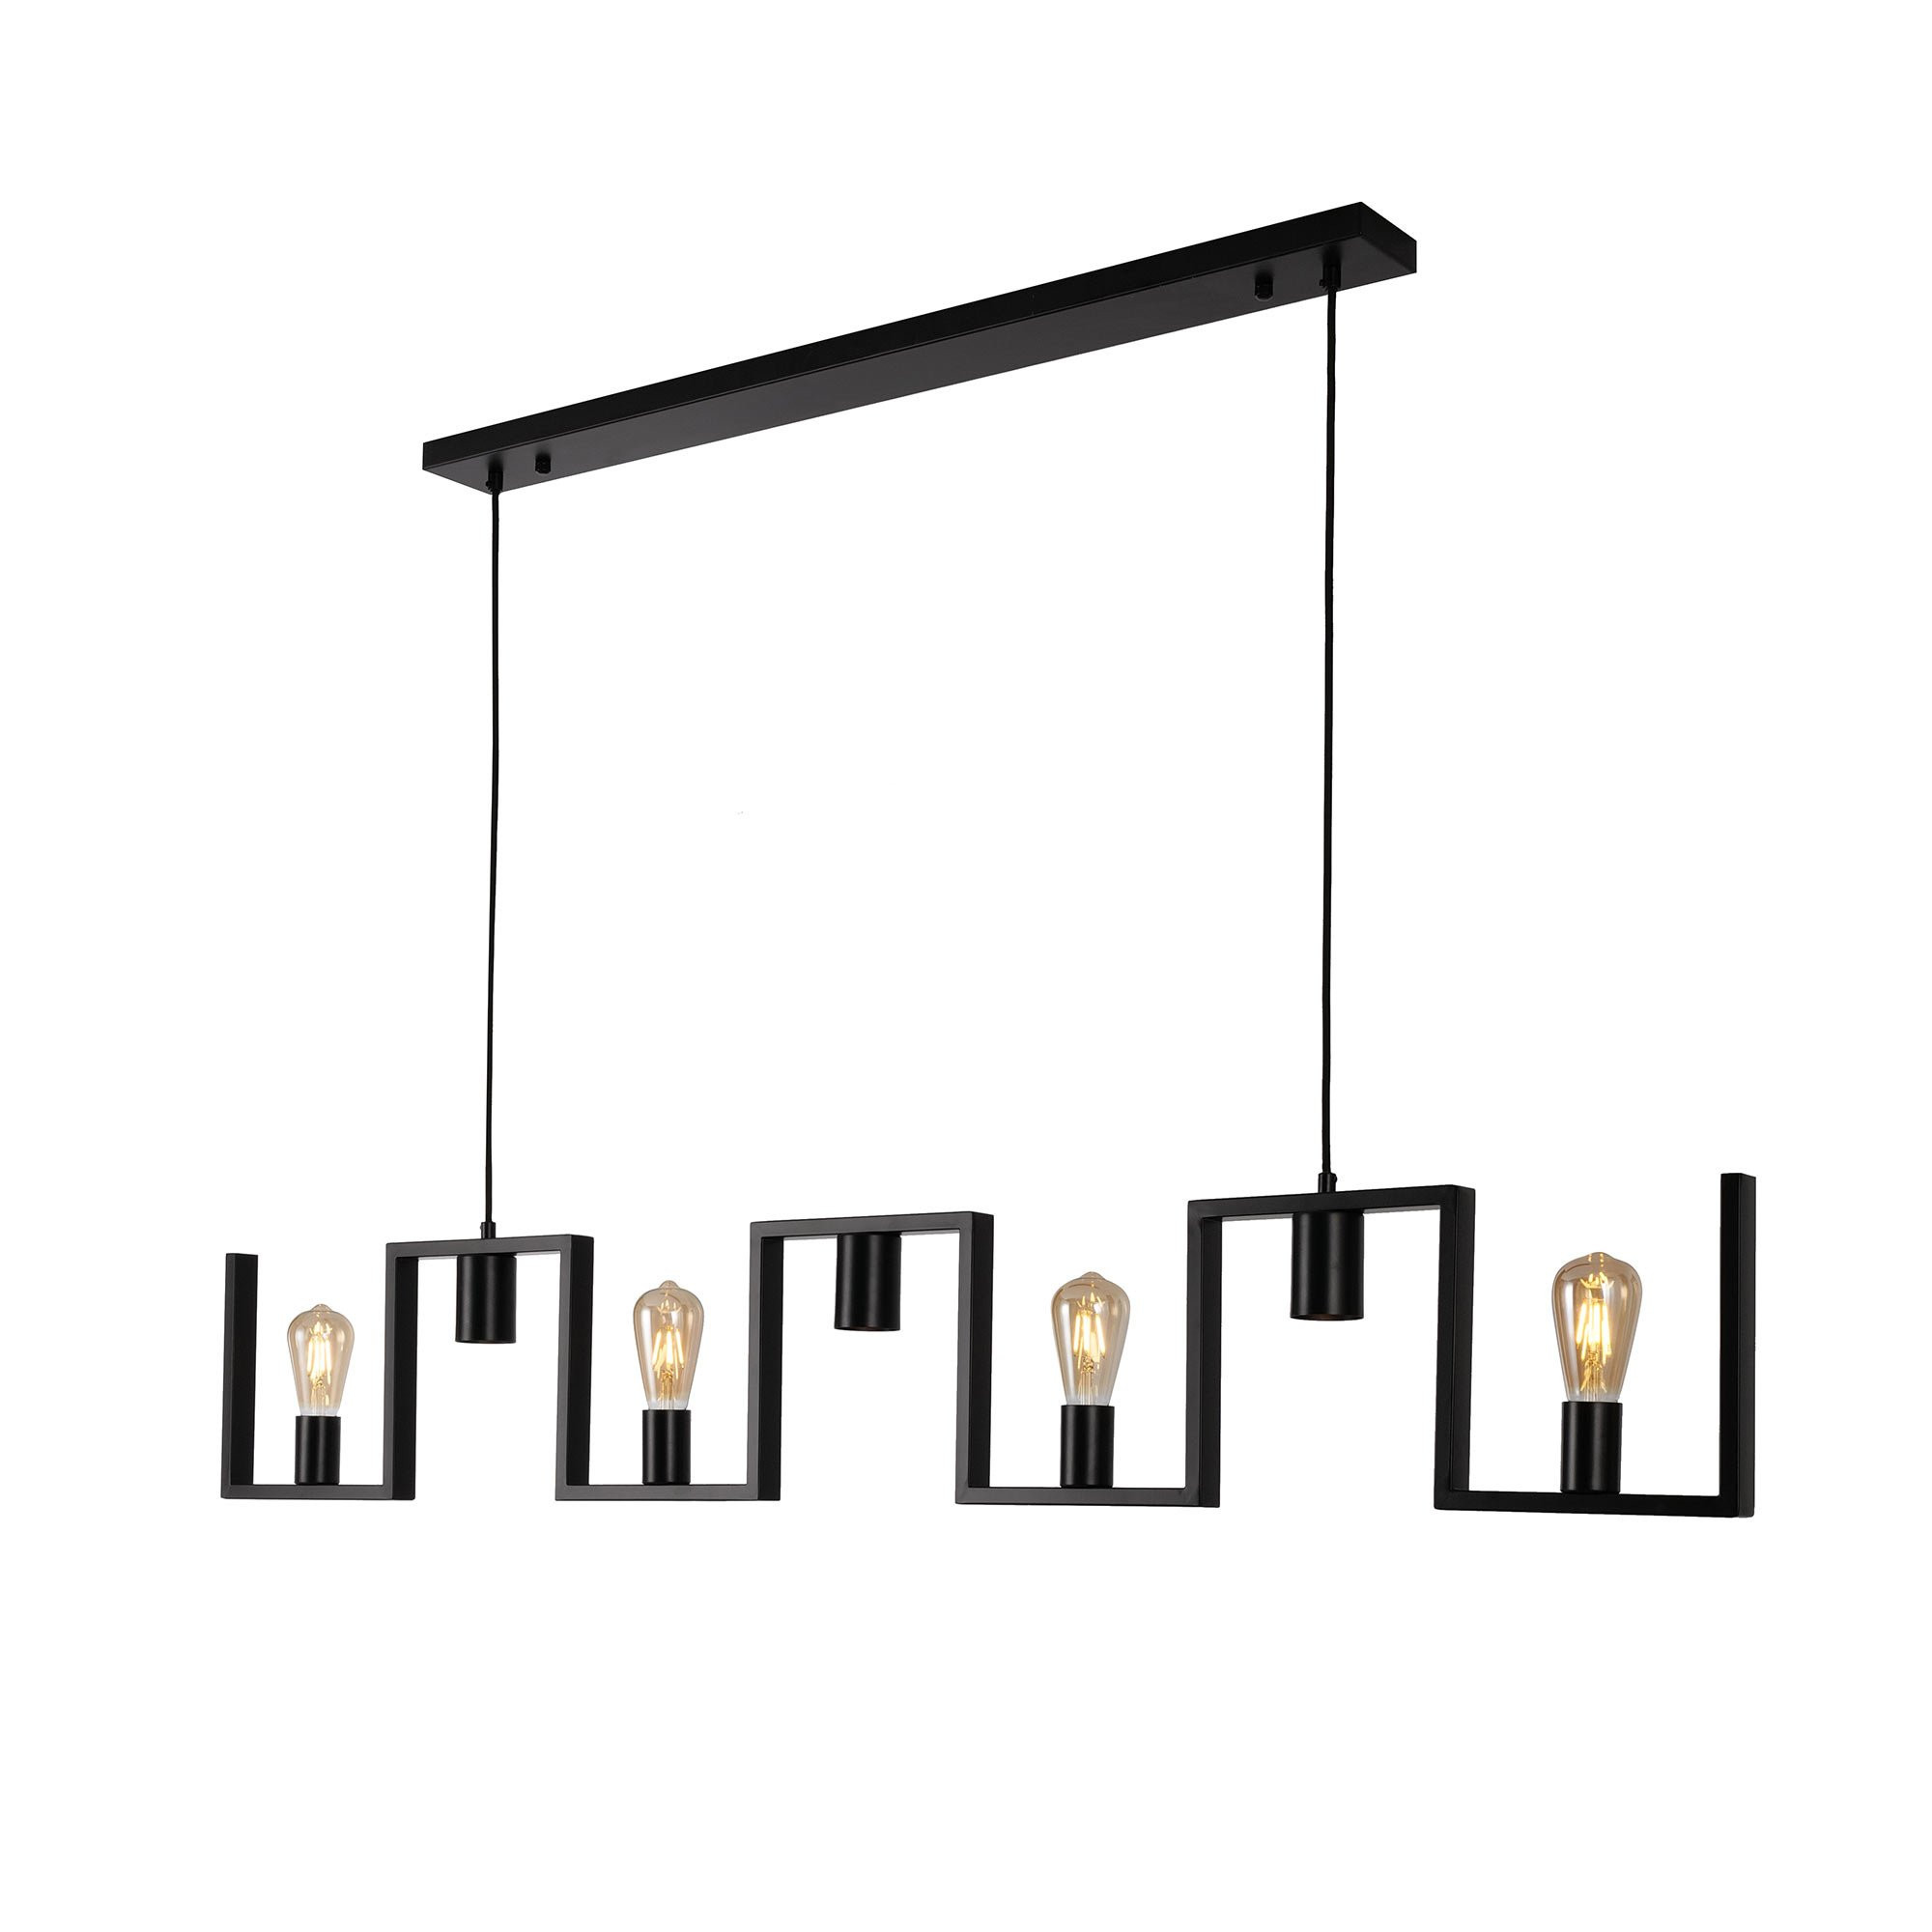 Ylumen Hanglamp Row 7 lichts -2e kans- L 158 cm zwart